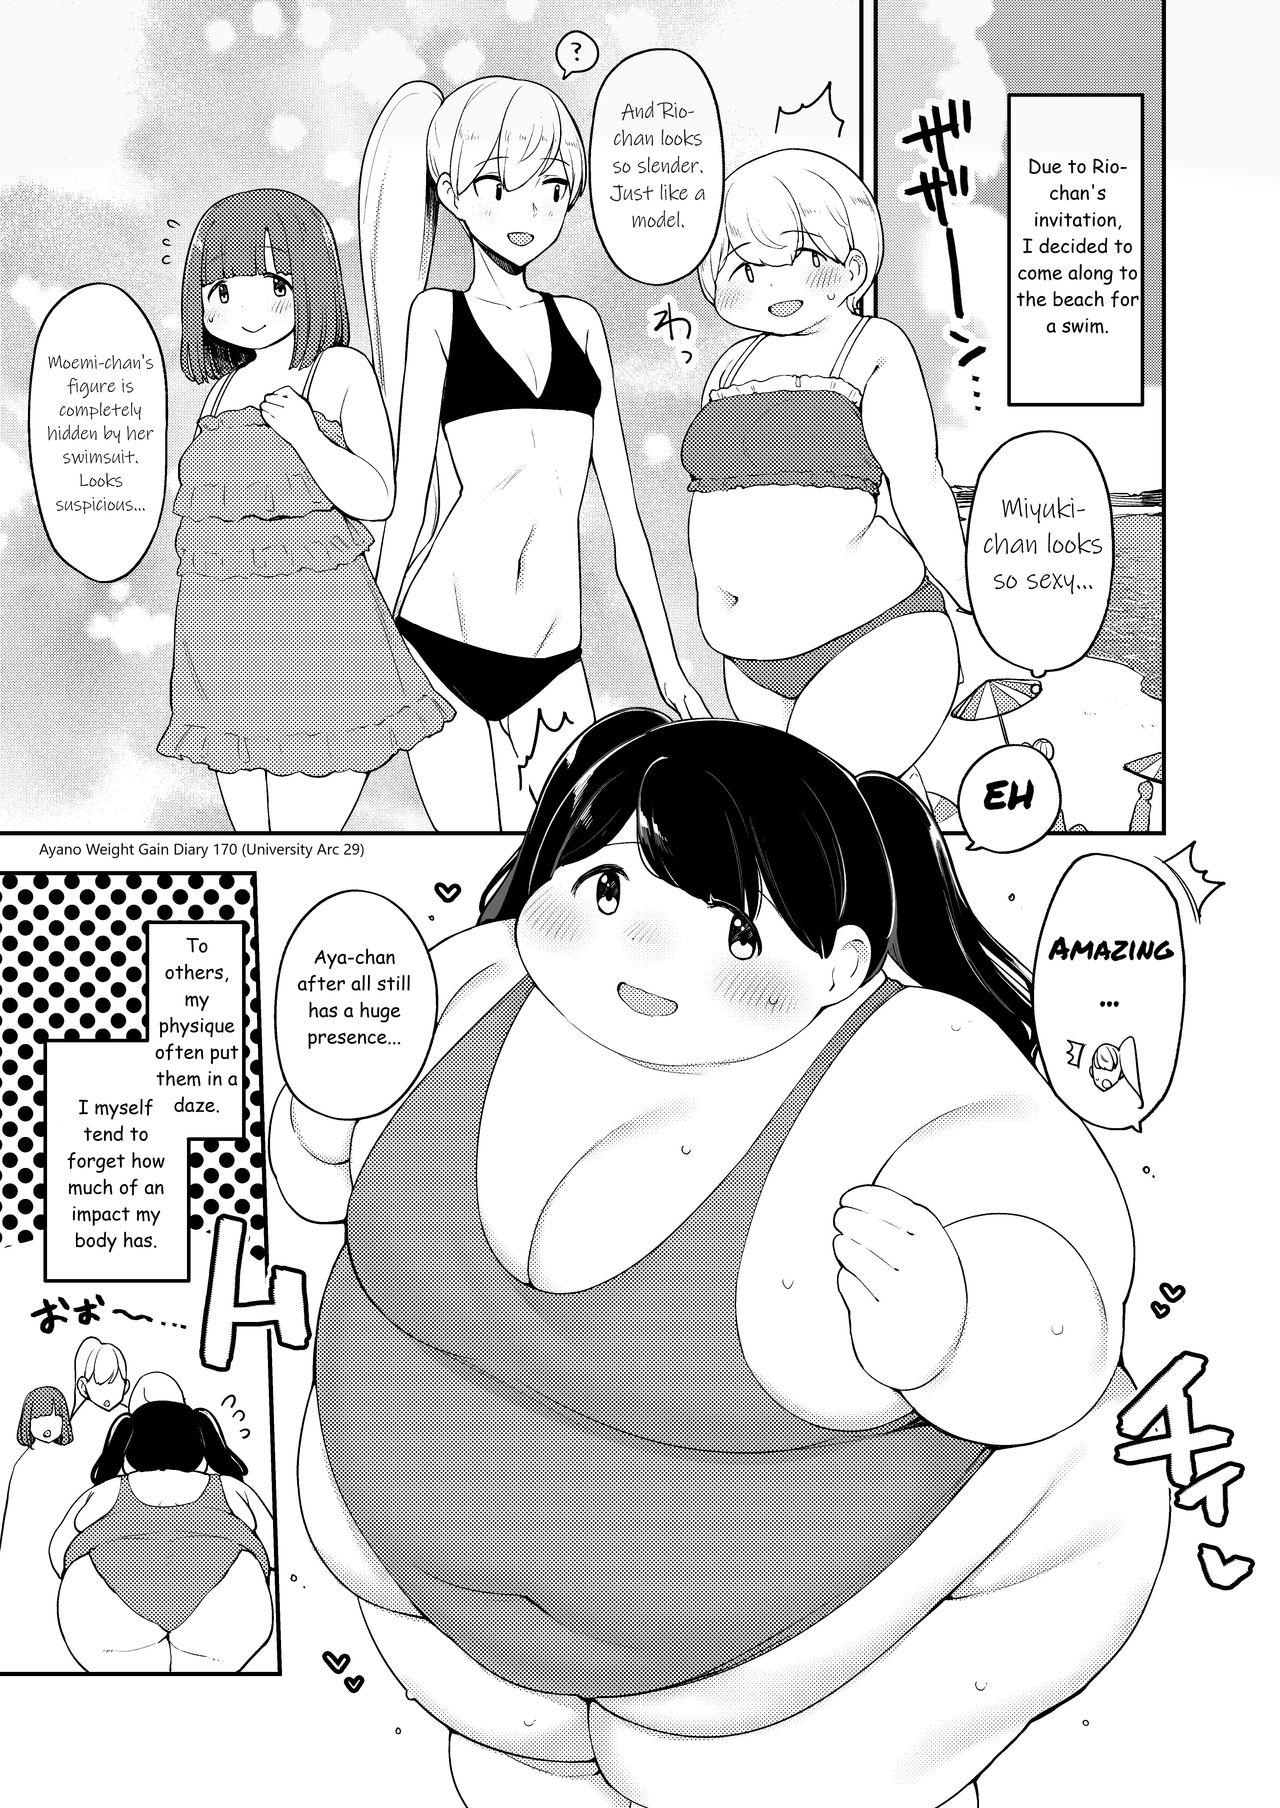 Ayano's Weight Gain Diary 170